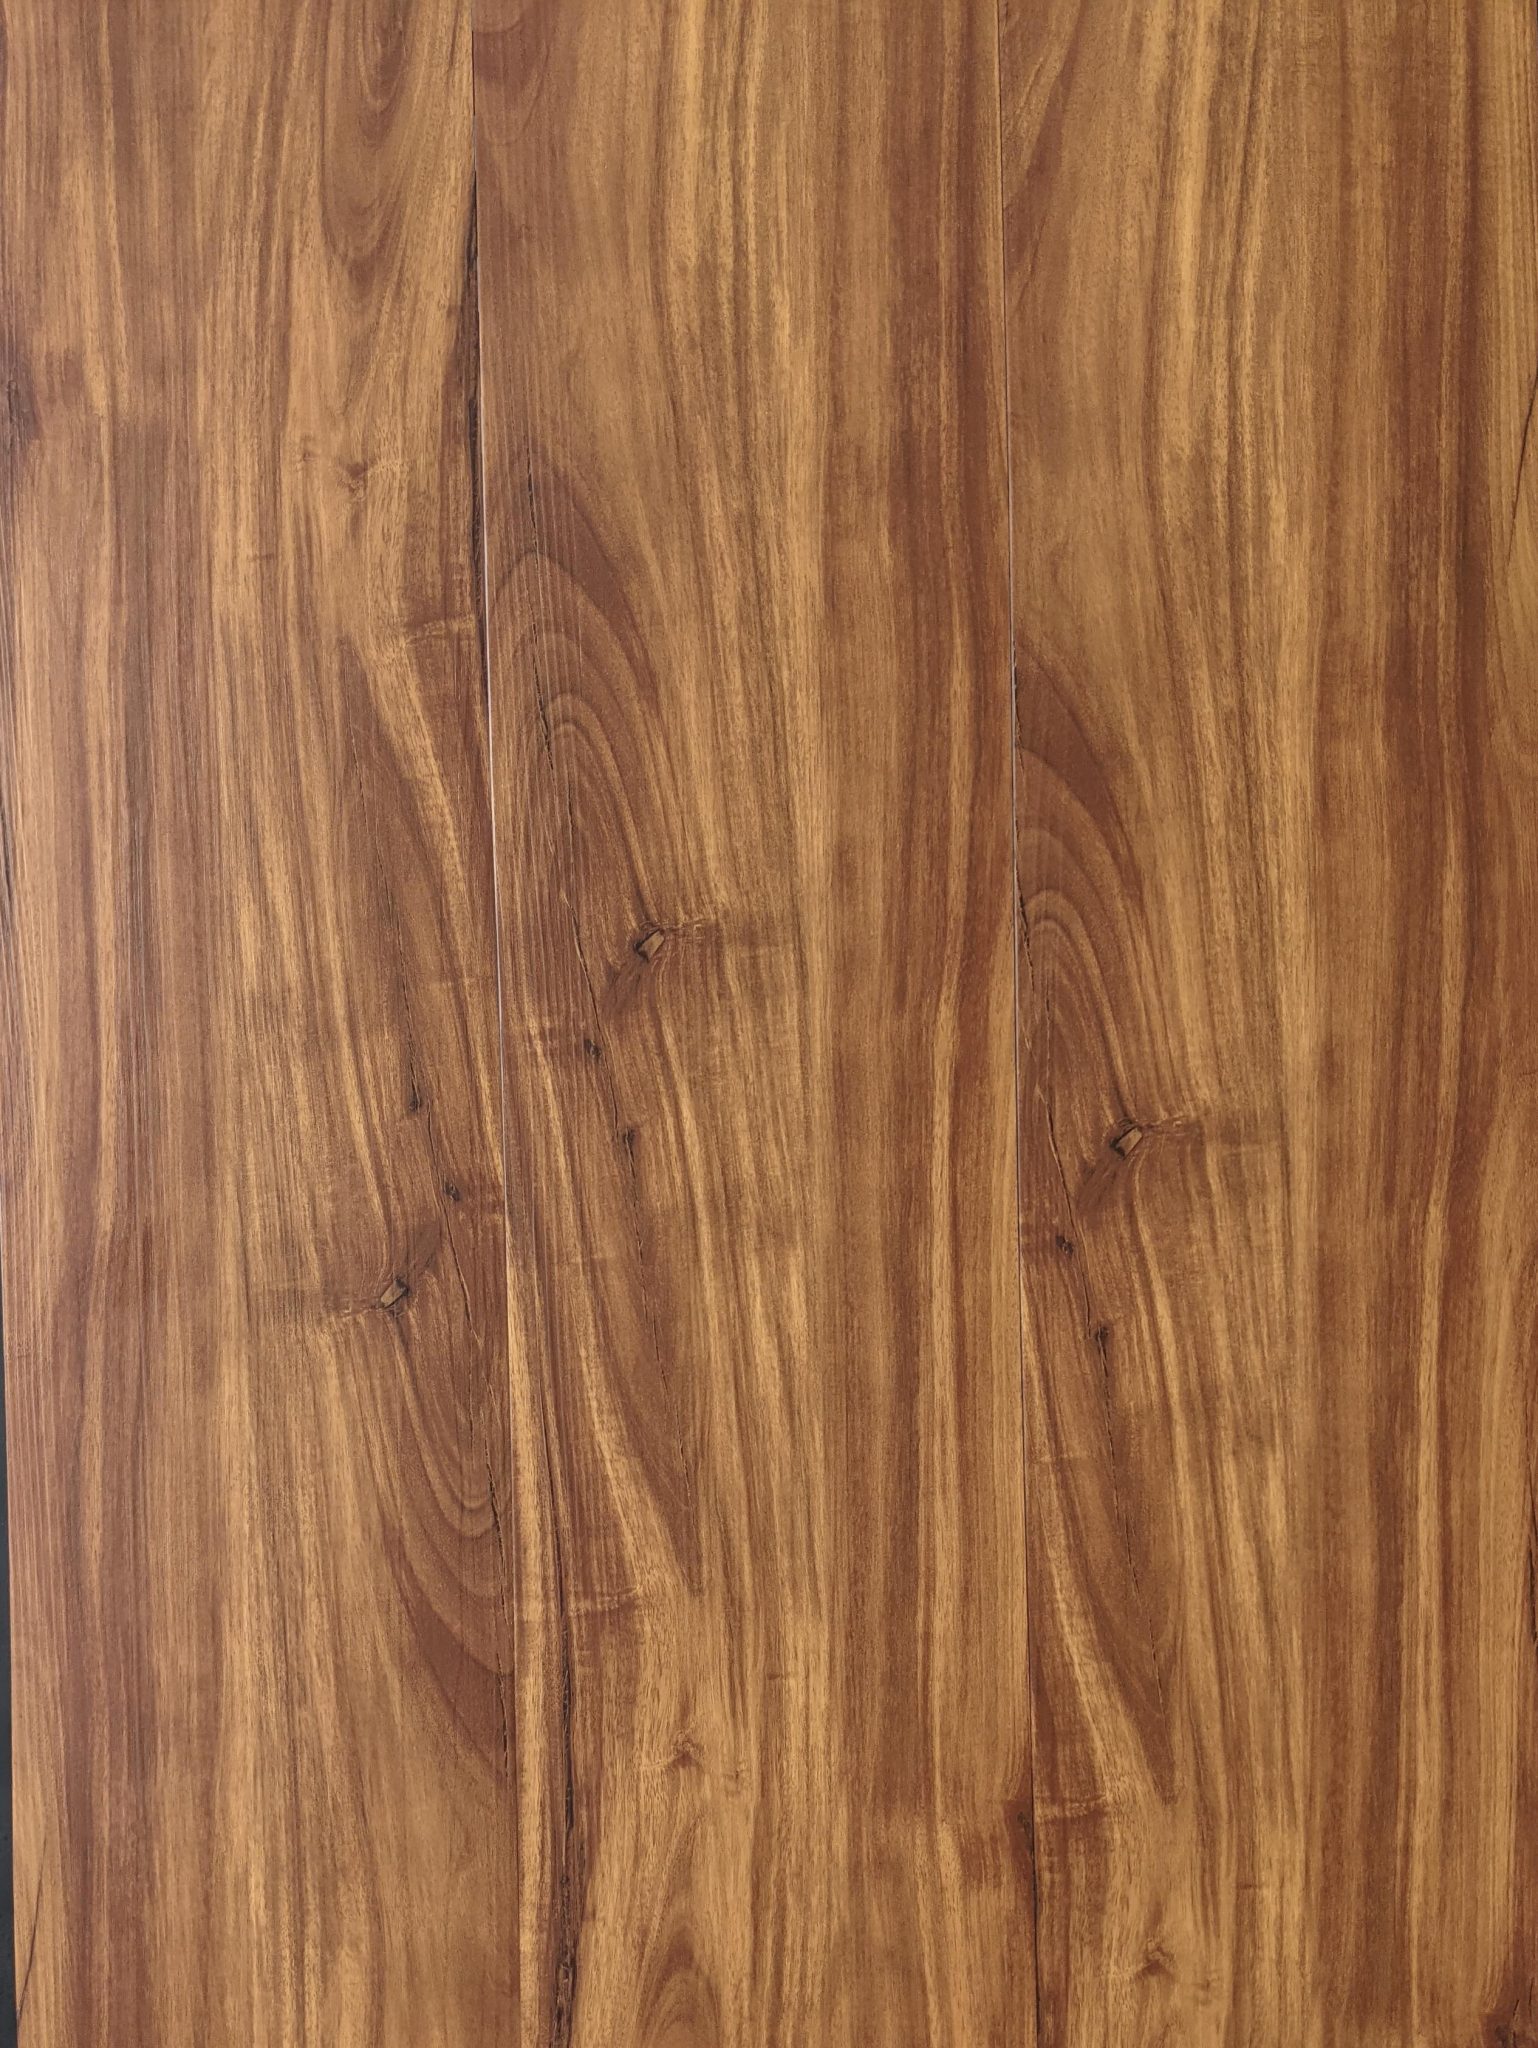 oak vinyl flooring